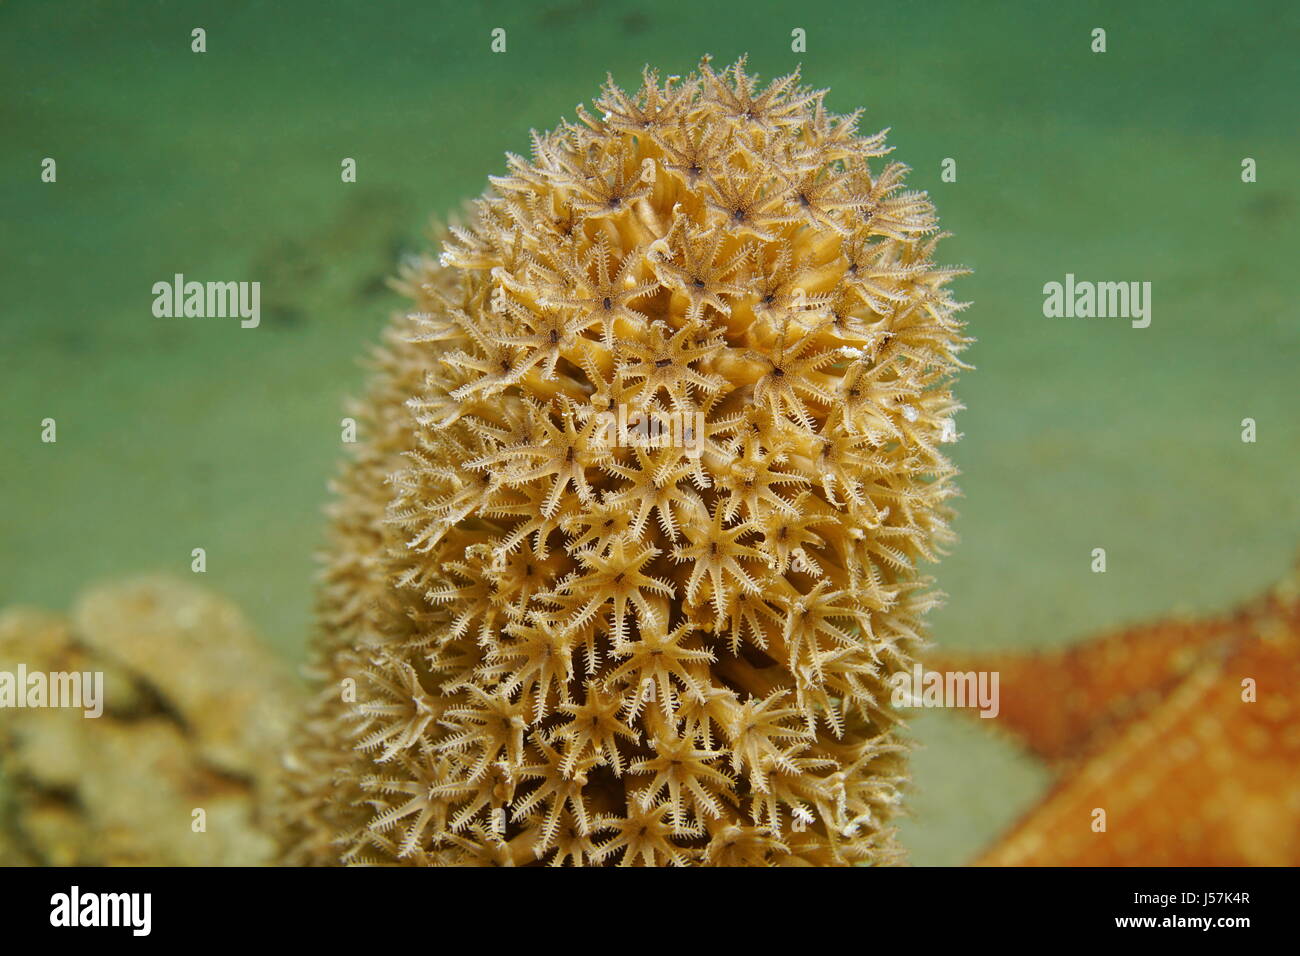 Close up de polypes de corail, mer interstitielle split Plexaurella octocoral gorgones de la tige, sous l'eau dans la mer des Caraïbes Banque D'Images